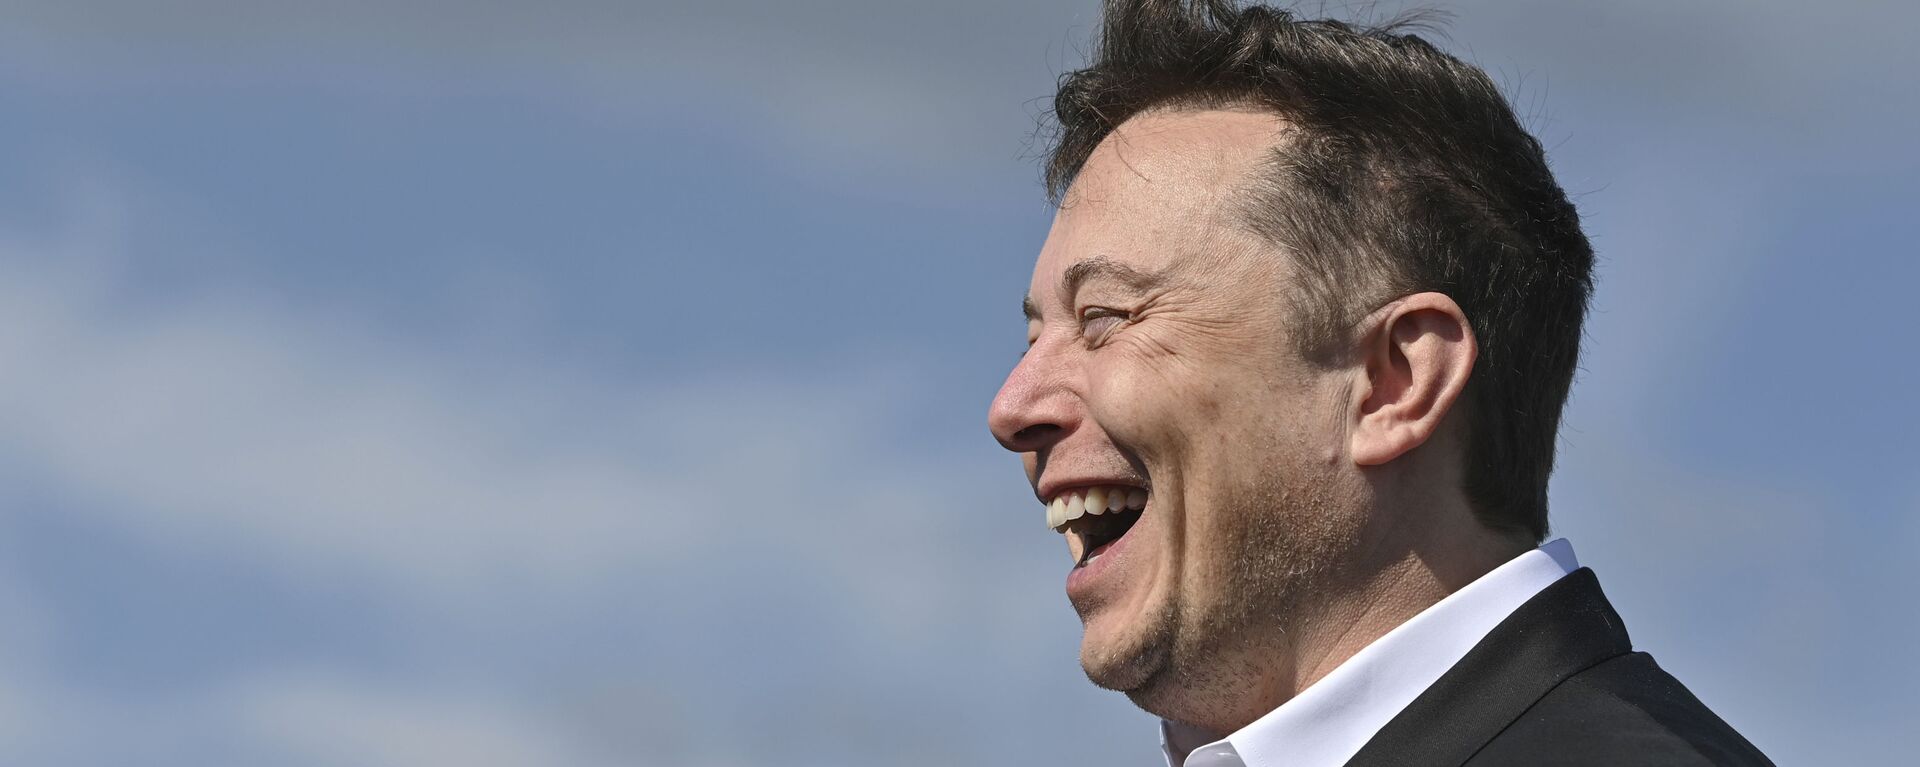 Doanh nhân công nghệ Elon Musk cười khi đến thăm công trường xây dựng Tesla Gigafactory ở Gruenheide gần Berlin, Đức, ngày 3 tháng 9 năm 2020. - Sputnik Việt Nam, 1920, 09.05.2022